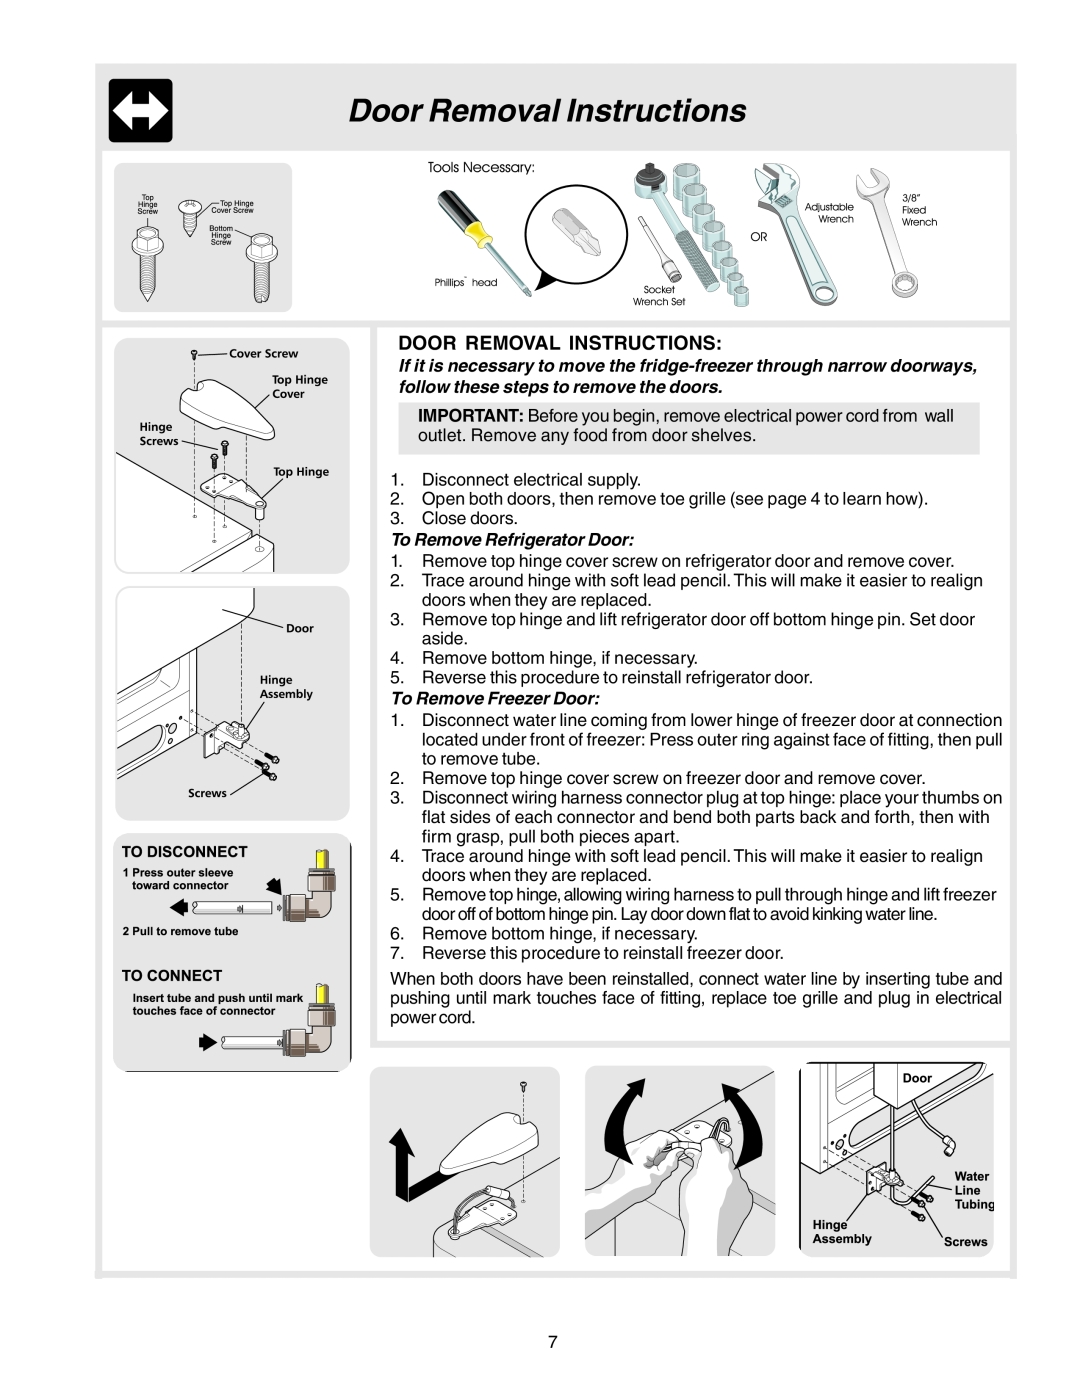 Electrolux U27107 manual Door Removal Instructions, To Remove Refrigerator Door, To Remove Freezer Door 